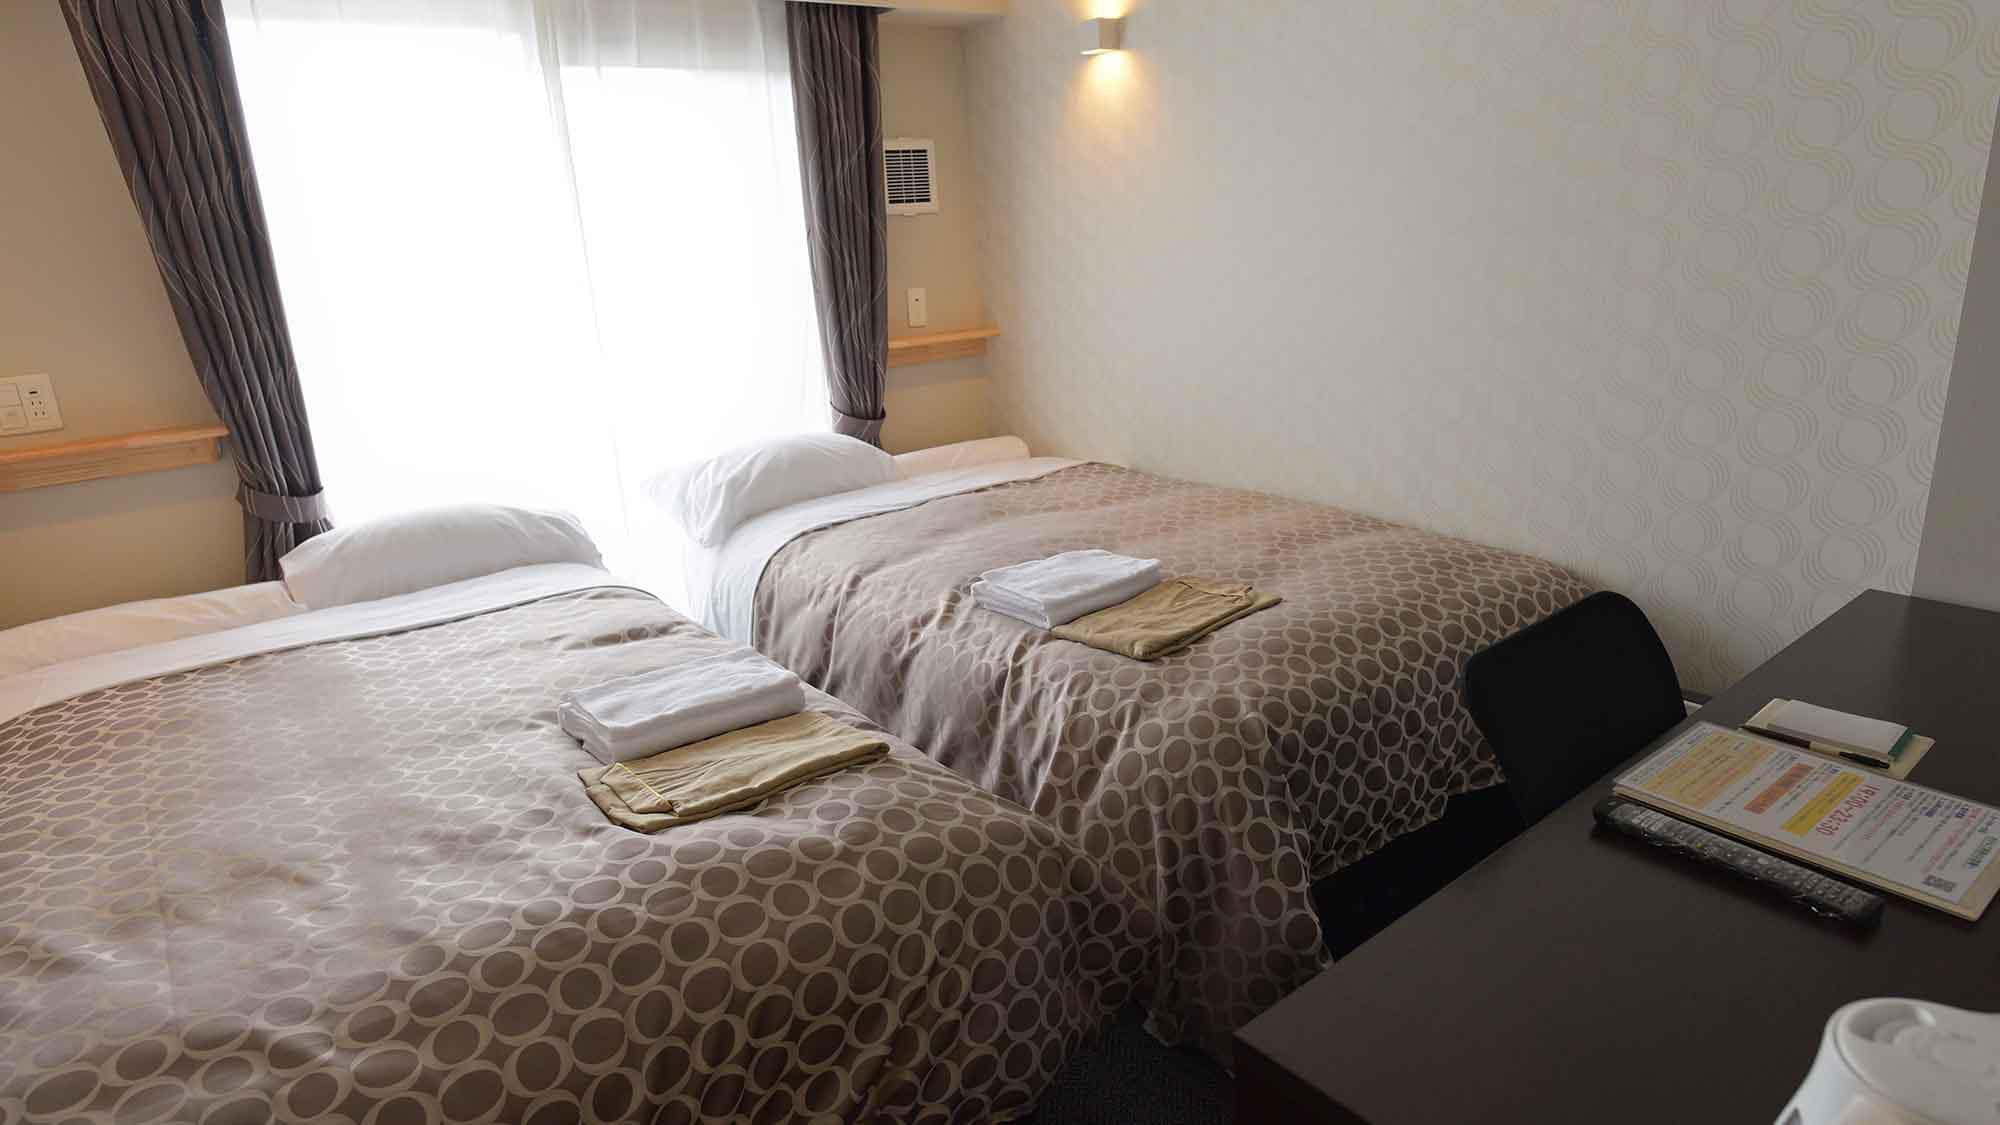 ・ ห้องเตียงแฝดขนาดกะทัดรัดและสะอาดพร้อมวิวทะเล